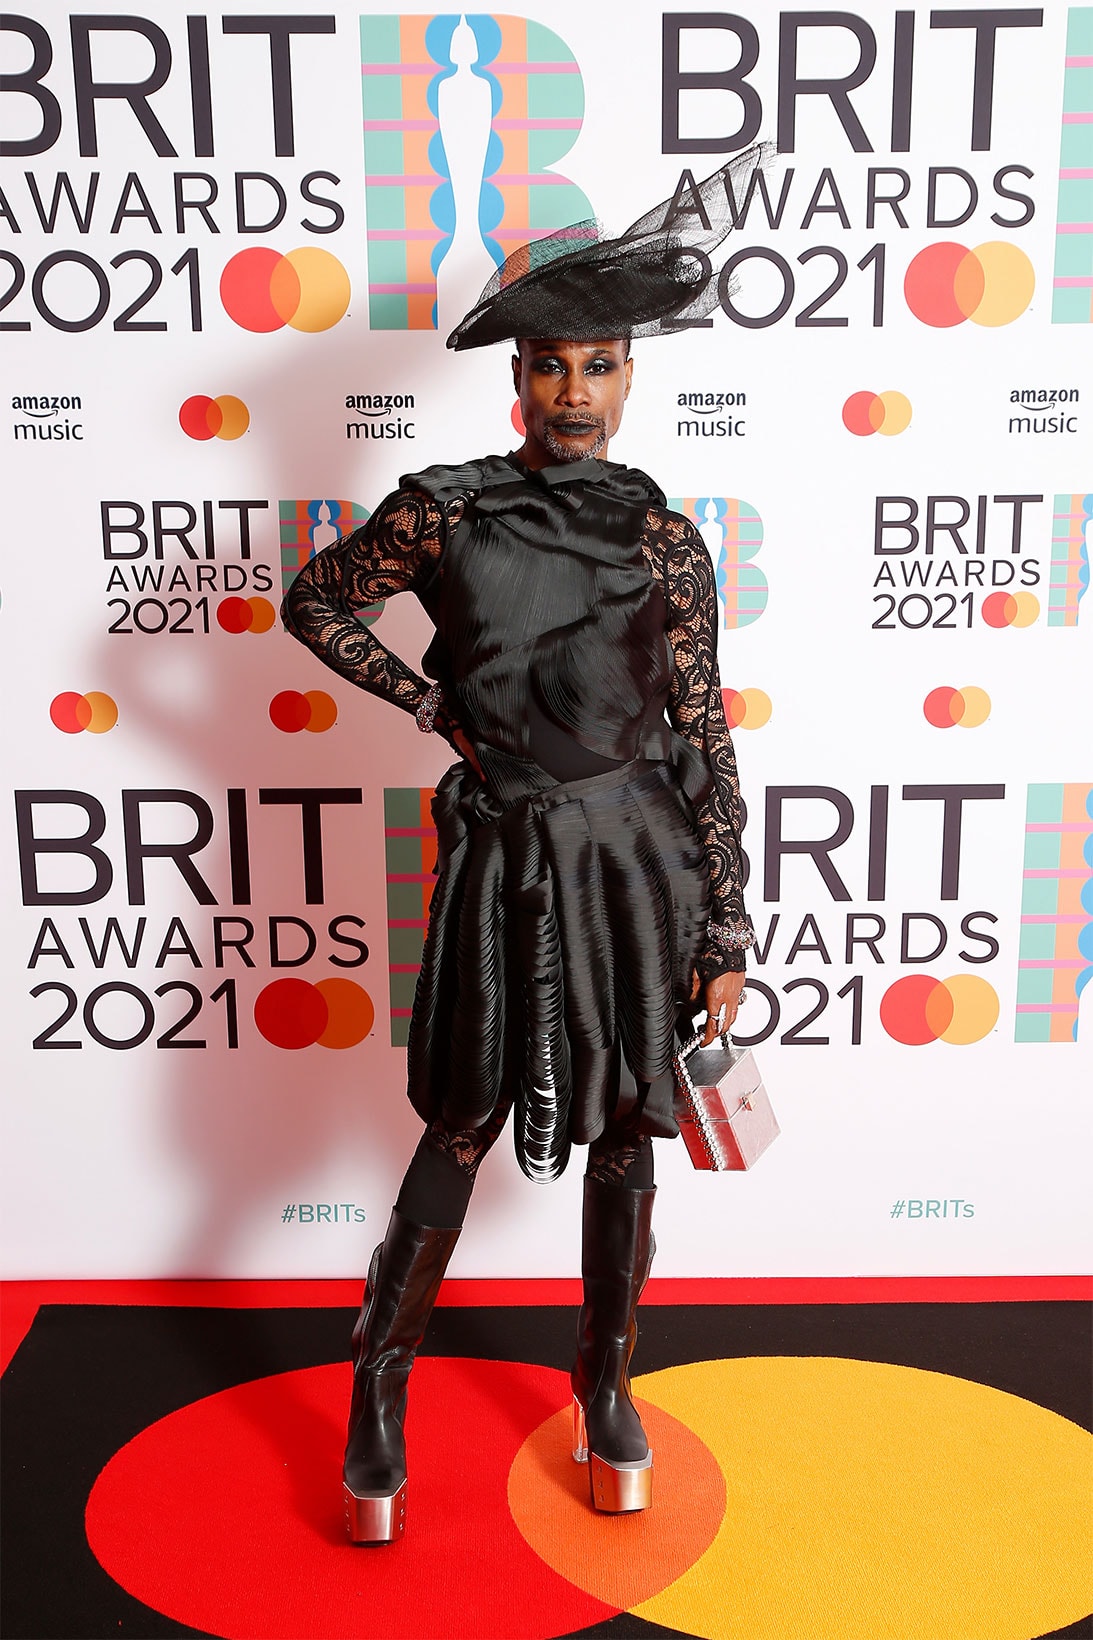 brit awards 2021 red carpet best dressed celebrities billy porter threeasfour